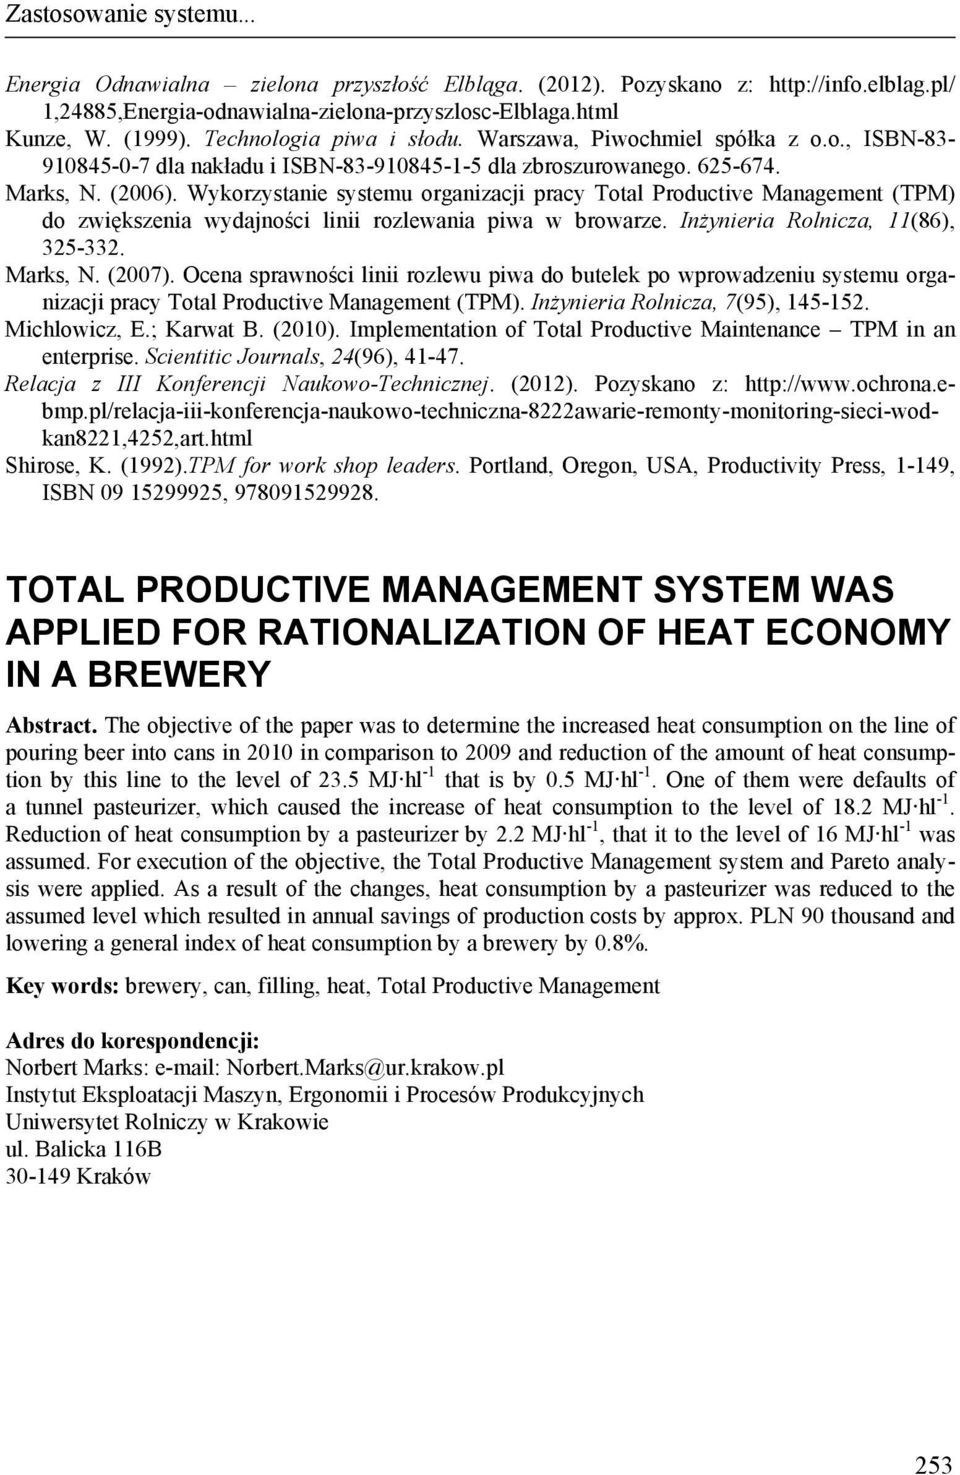 Wykorzystanie systemu organizacji pracy Total Productive Management (TPM) do zwiększenia wydajności linii rozlewania piwa w browarze. Inżynieria Rolnicza, 11(86), 325-332. Marks, N. (2007).